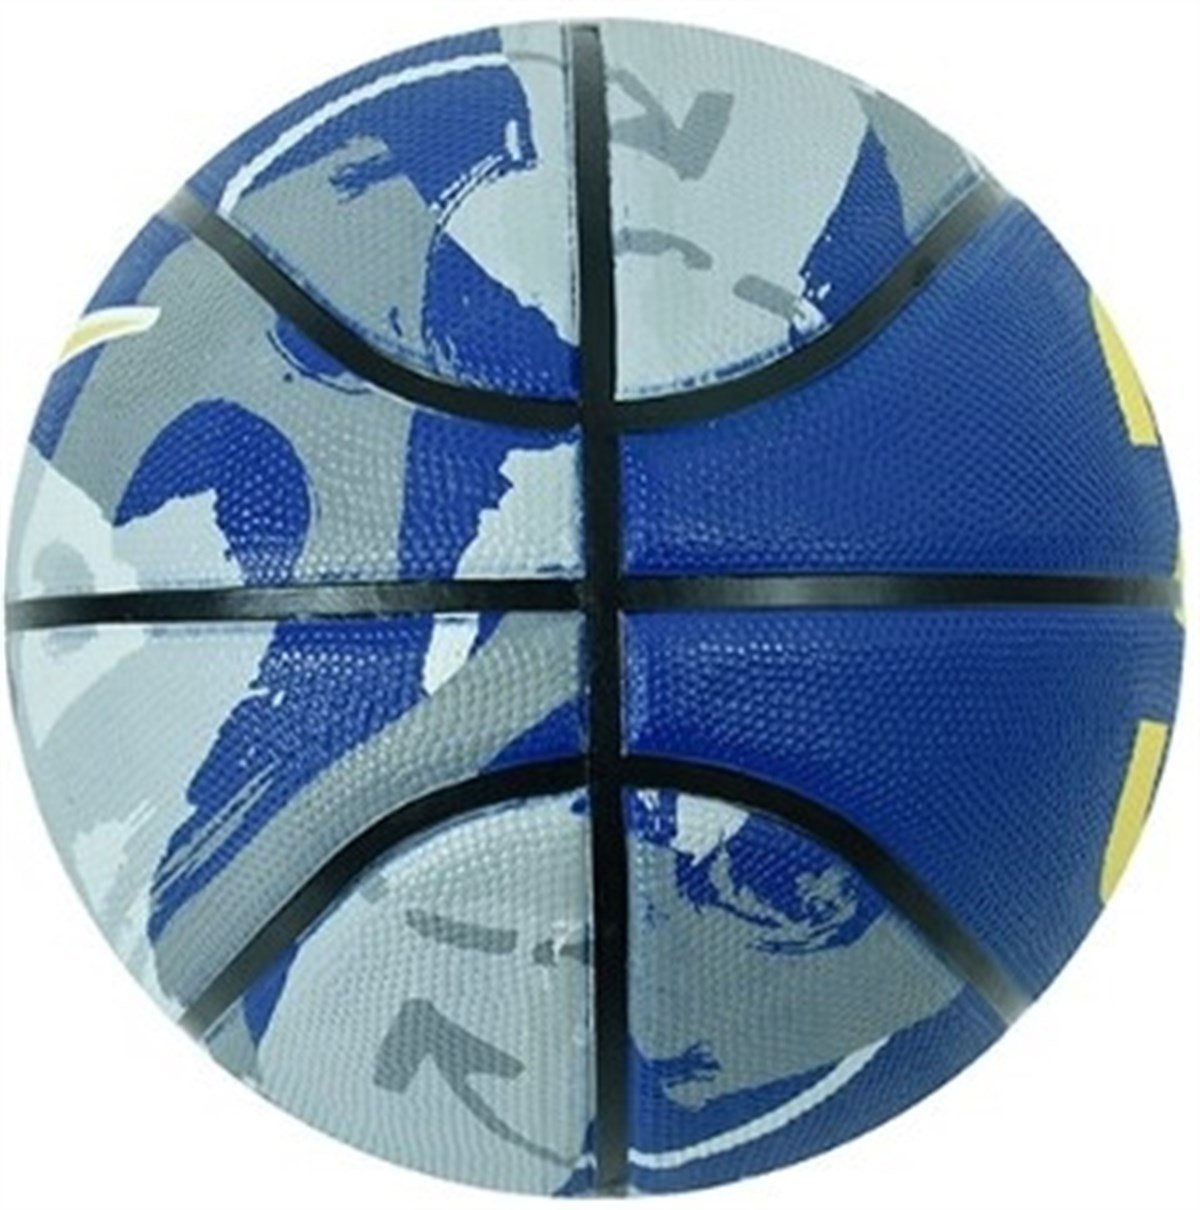 Nike Kd Playground Basketbol Topu NKI13-987